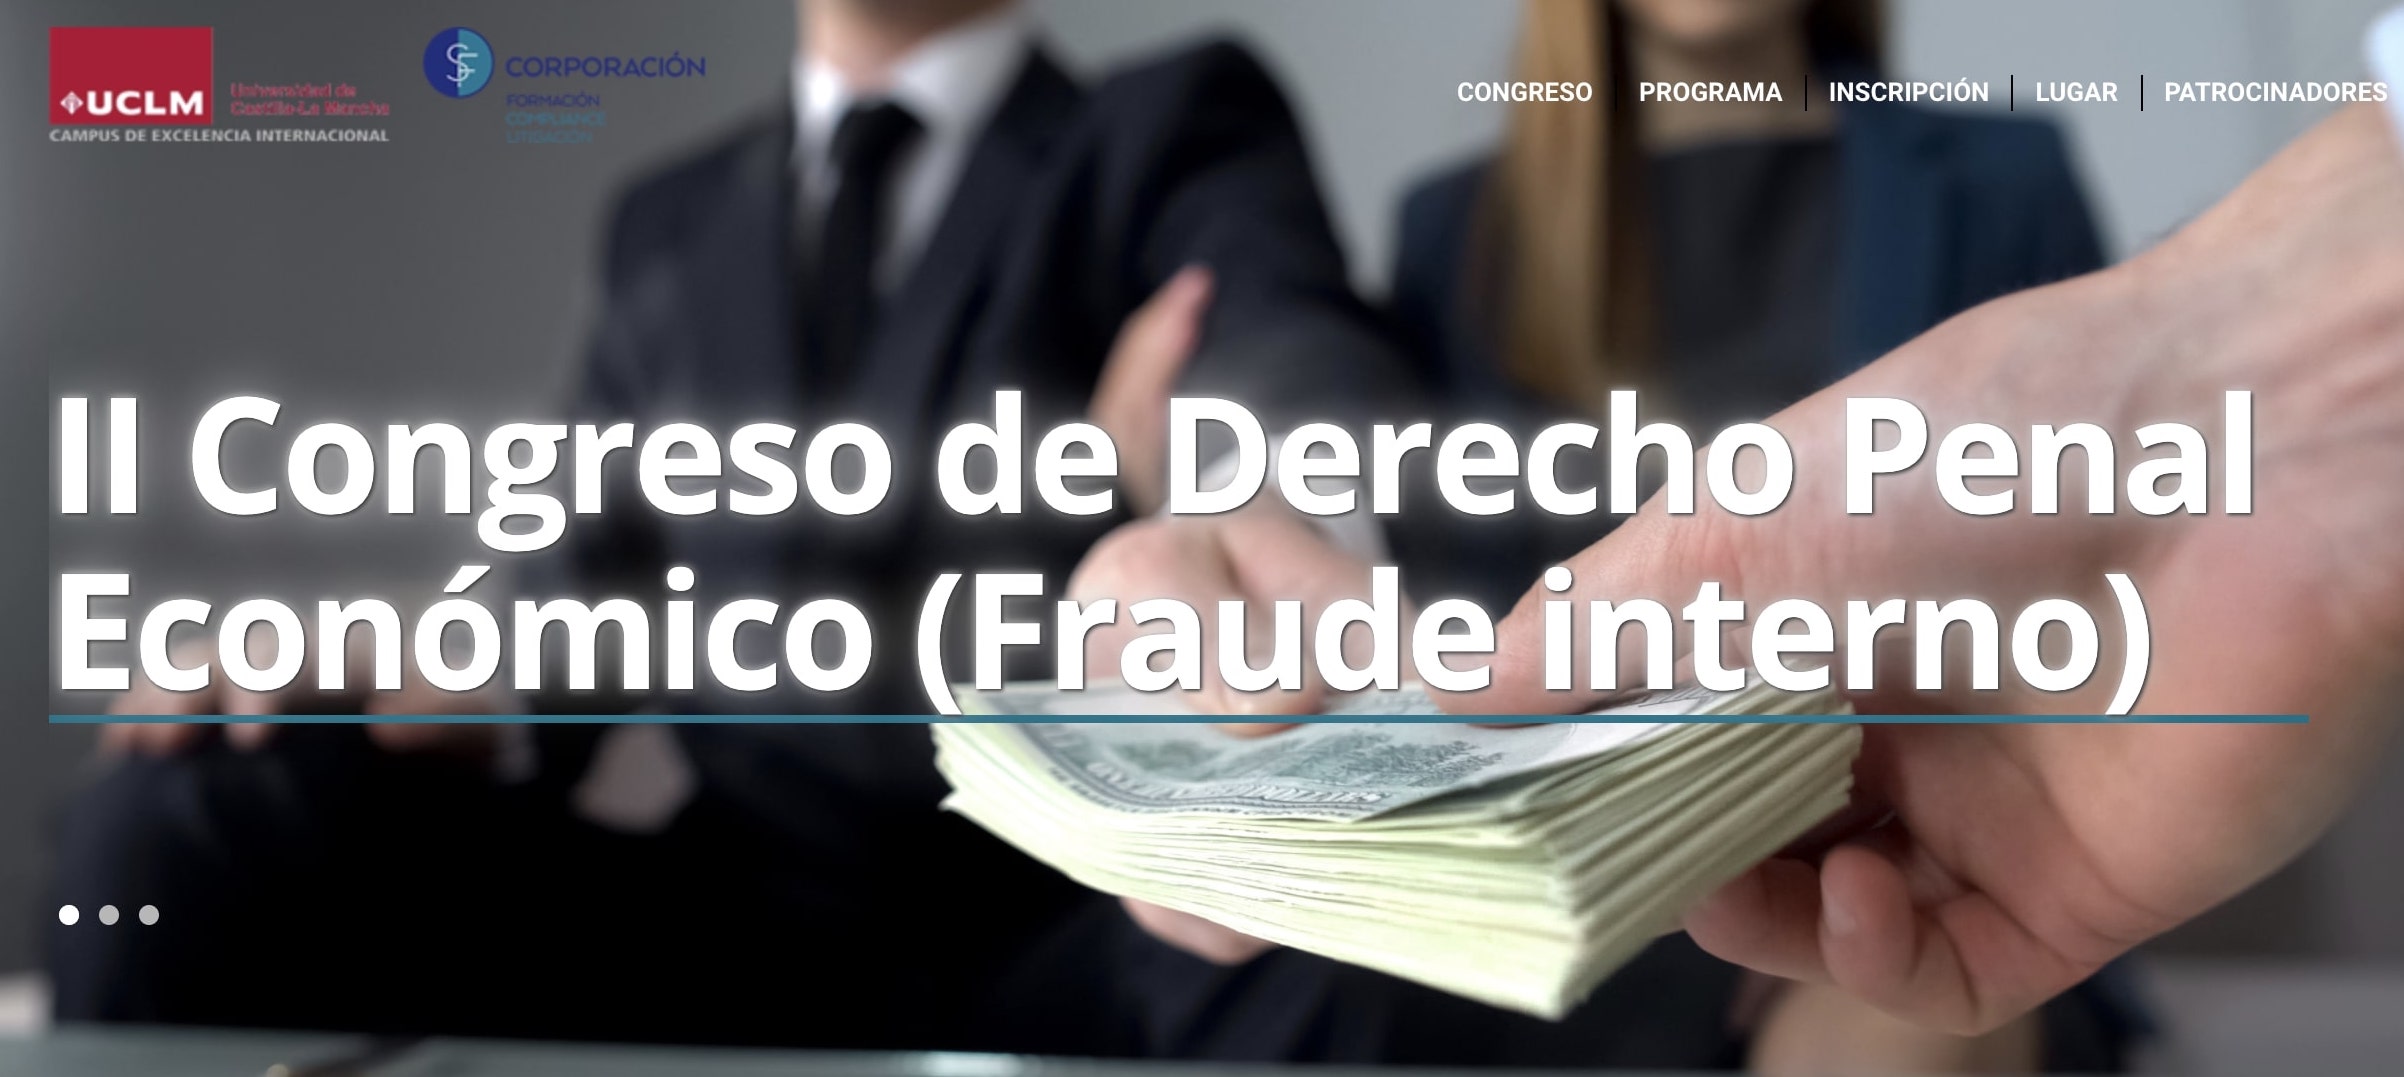 II Congreso de Derecho Penal Económico (Fraude interno)